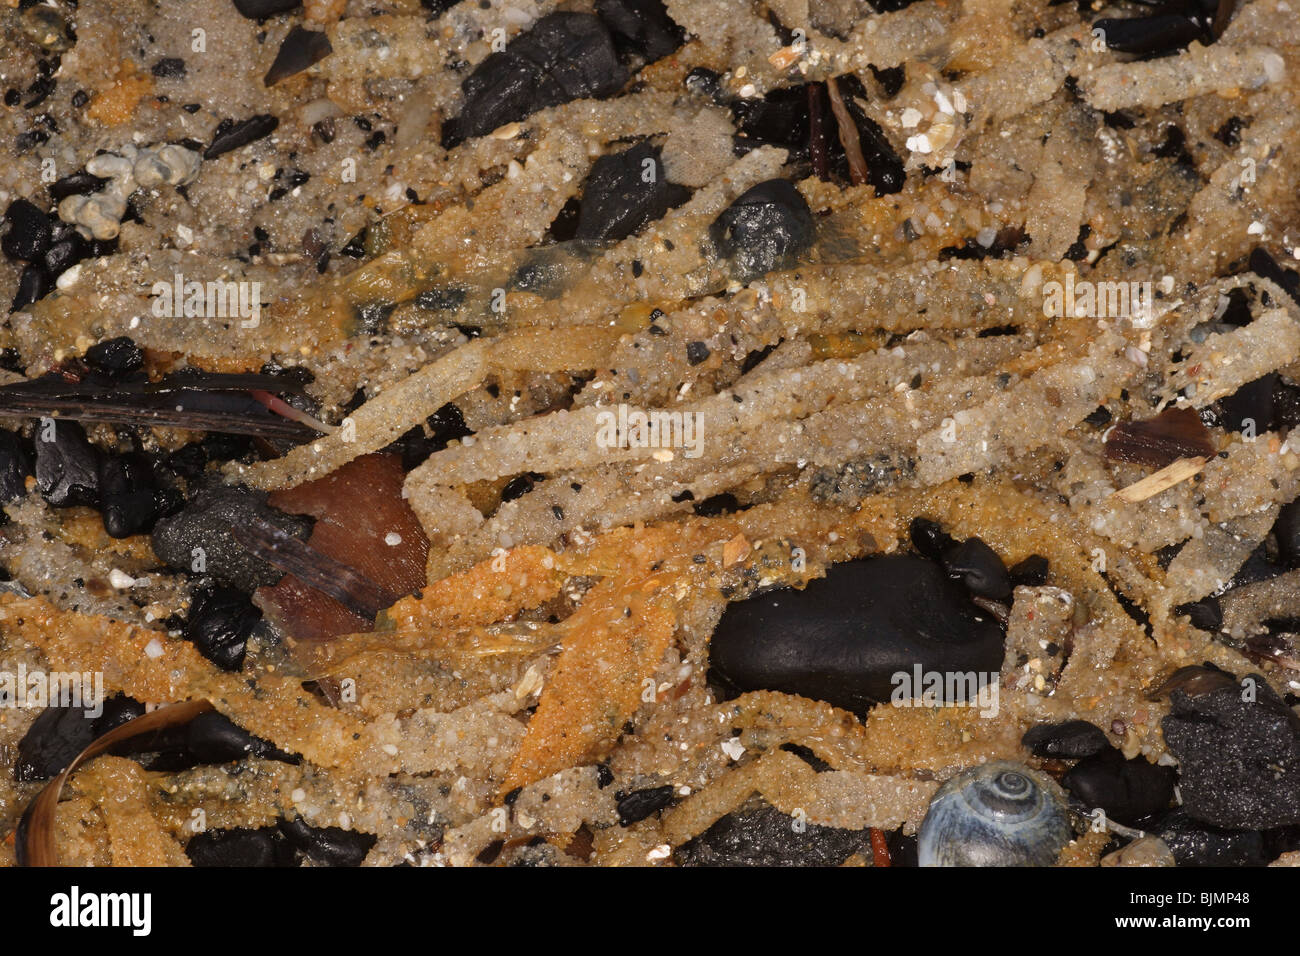 Sand mason worm , Lanice conchilega. Tubes , washed up on strandline. Studland beach Dorset. march. Stock Photo